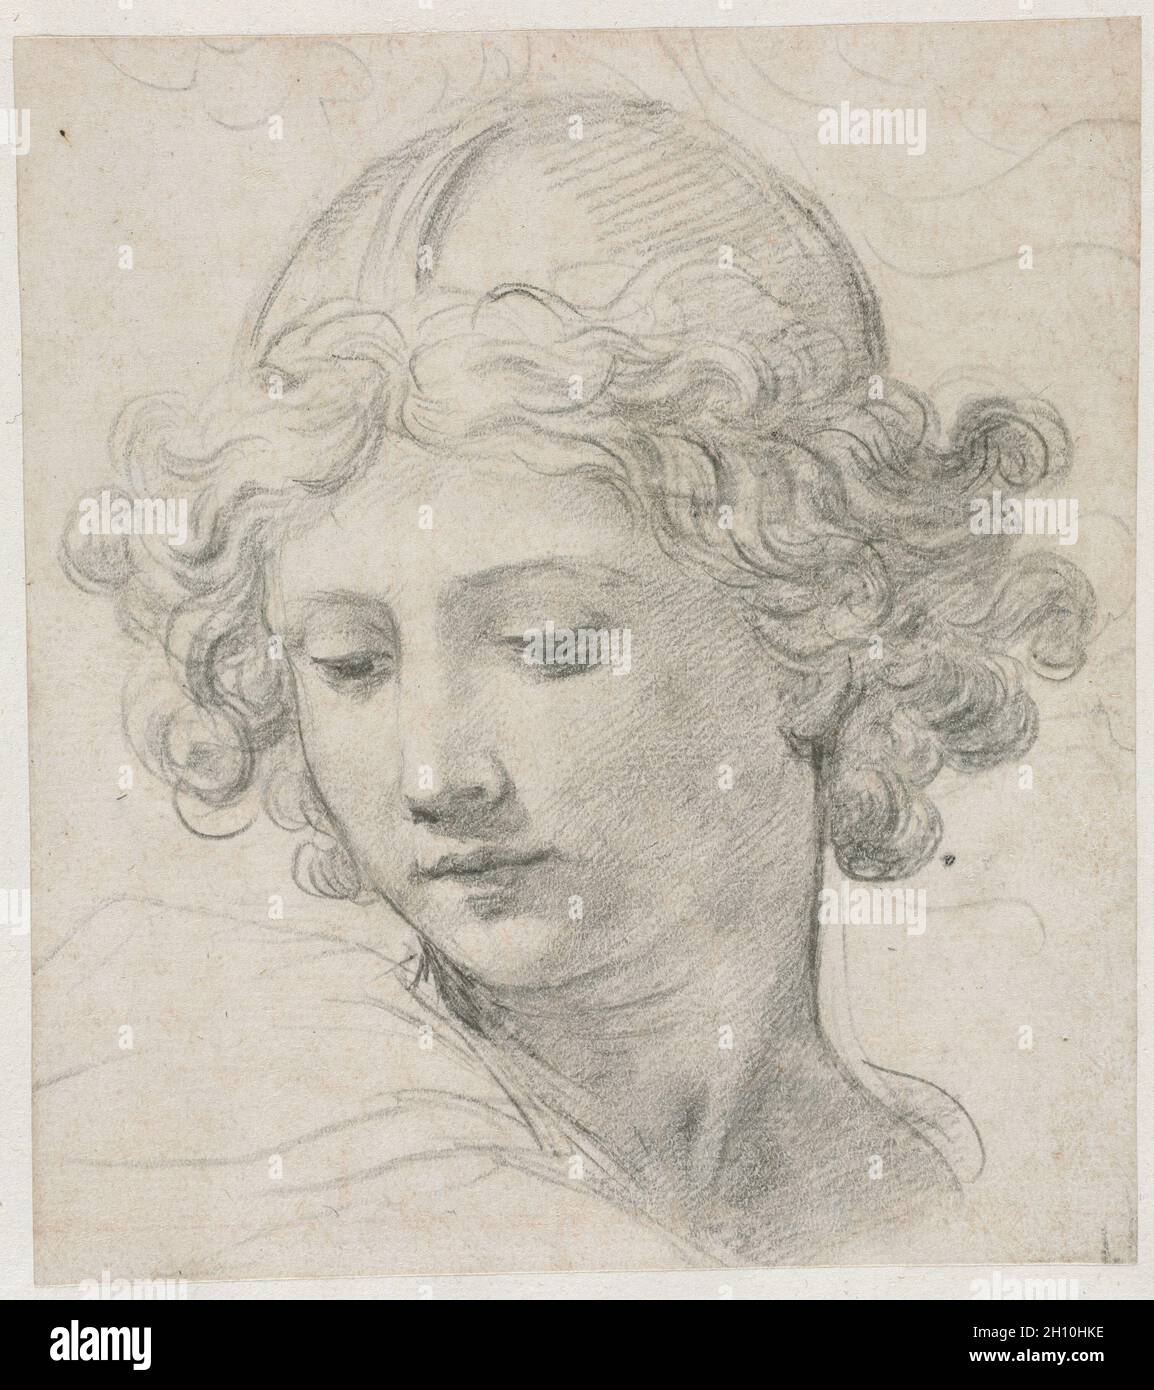 Study for the Head of St. Michael, 1633. Pietro da Cortona (Italian, 1596-1669). Black chalk; sheet: 19 x 16.8 cm (7 1/2 x 6 5/8 in.); secondary support: 31.9 x 27.6 cm (12 9/16 x 10 7/8 in.). Stock Photo